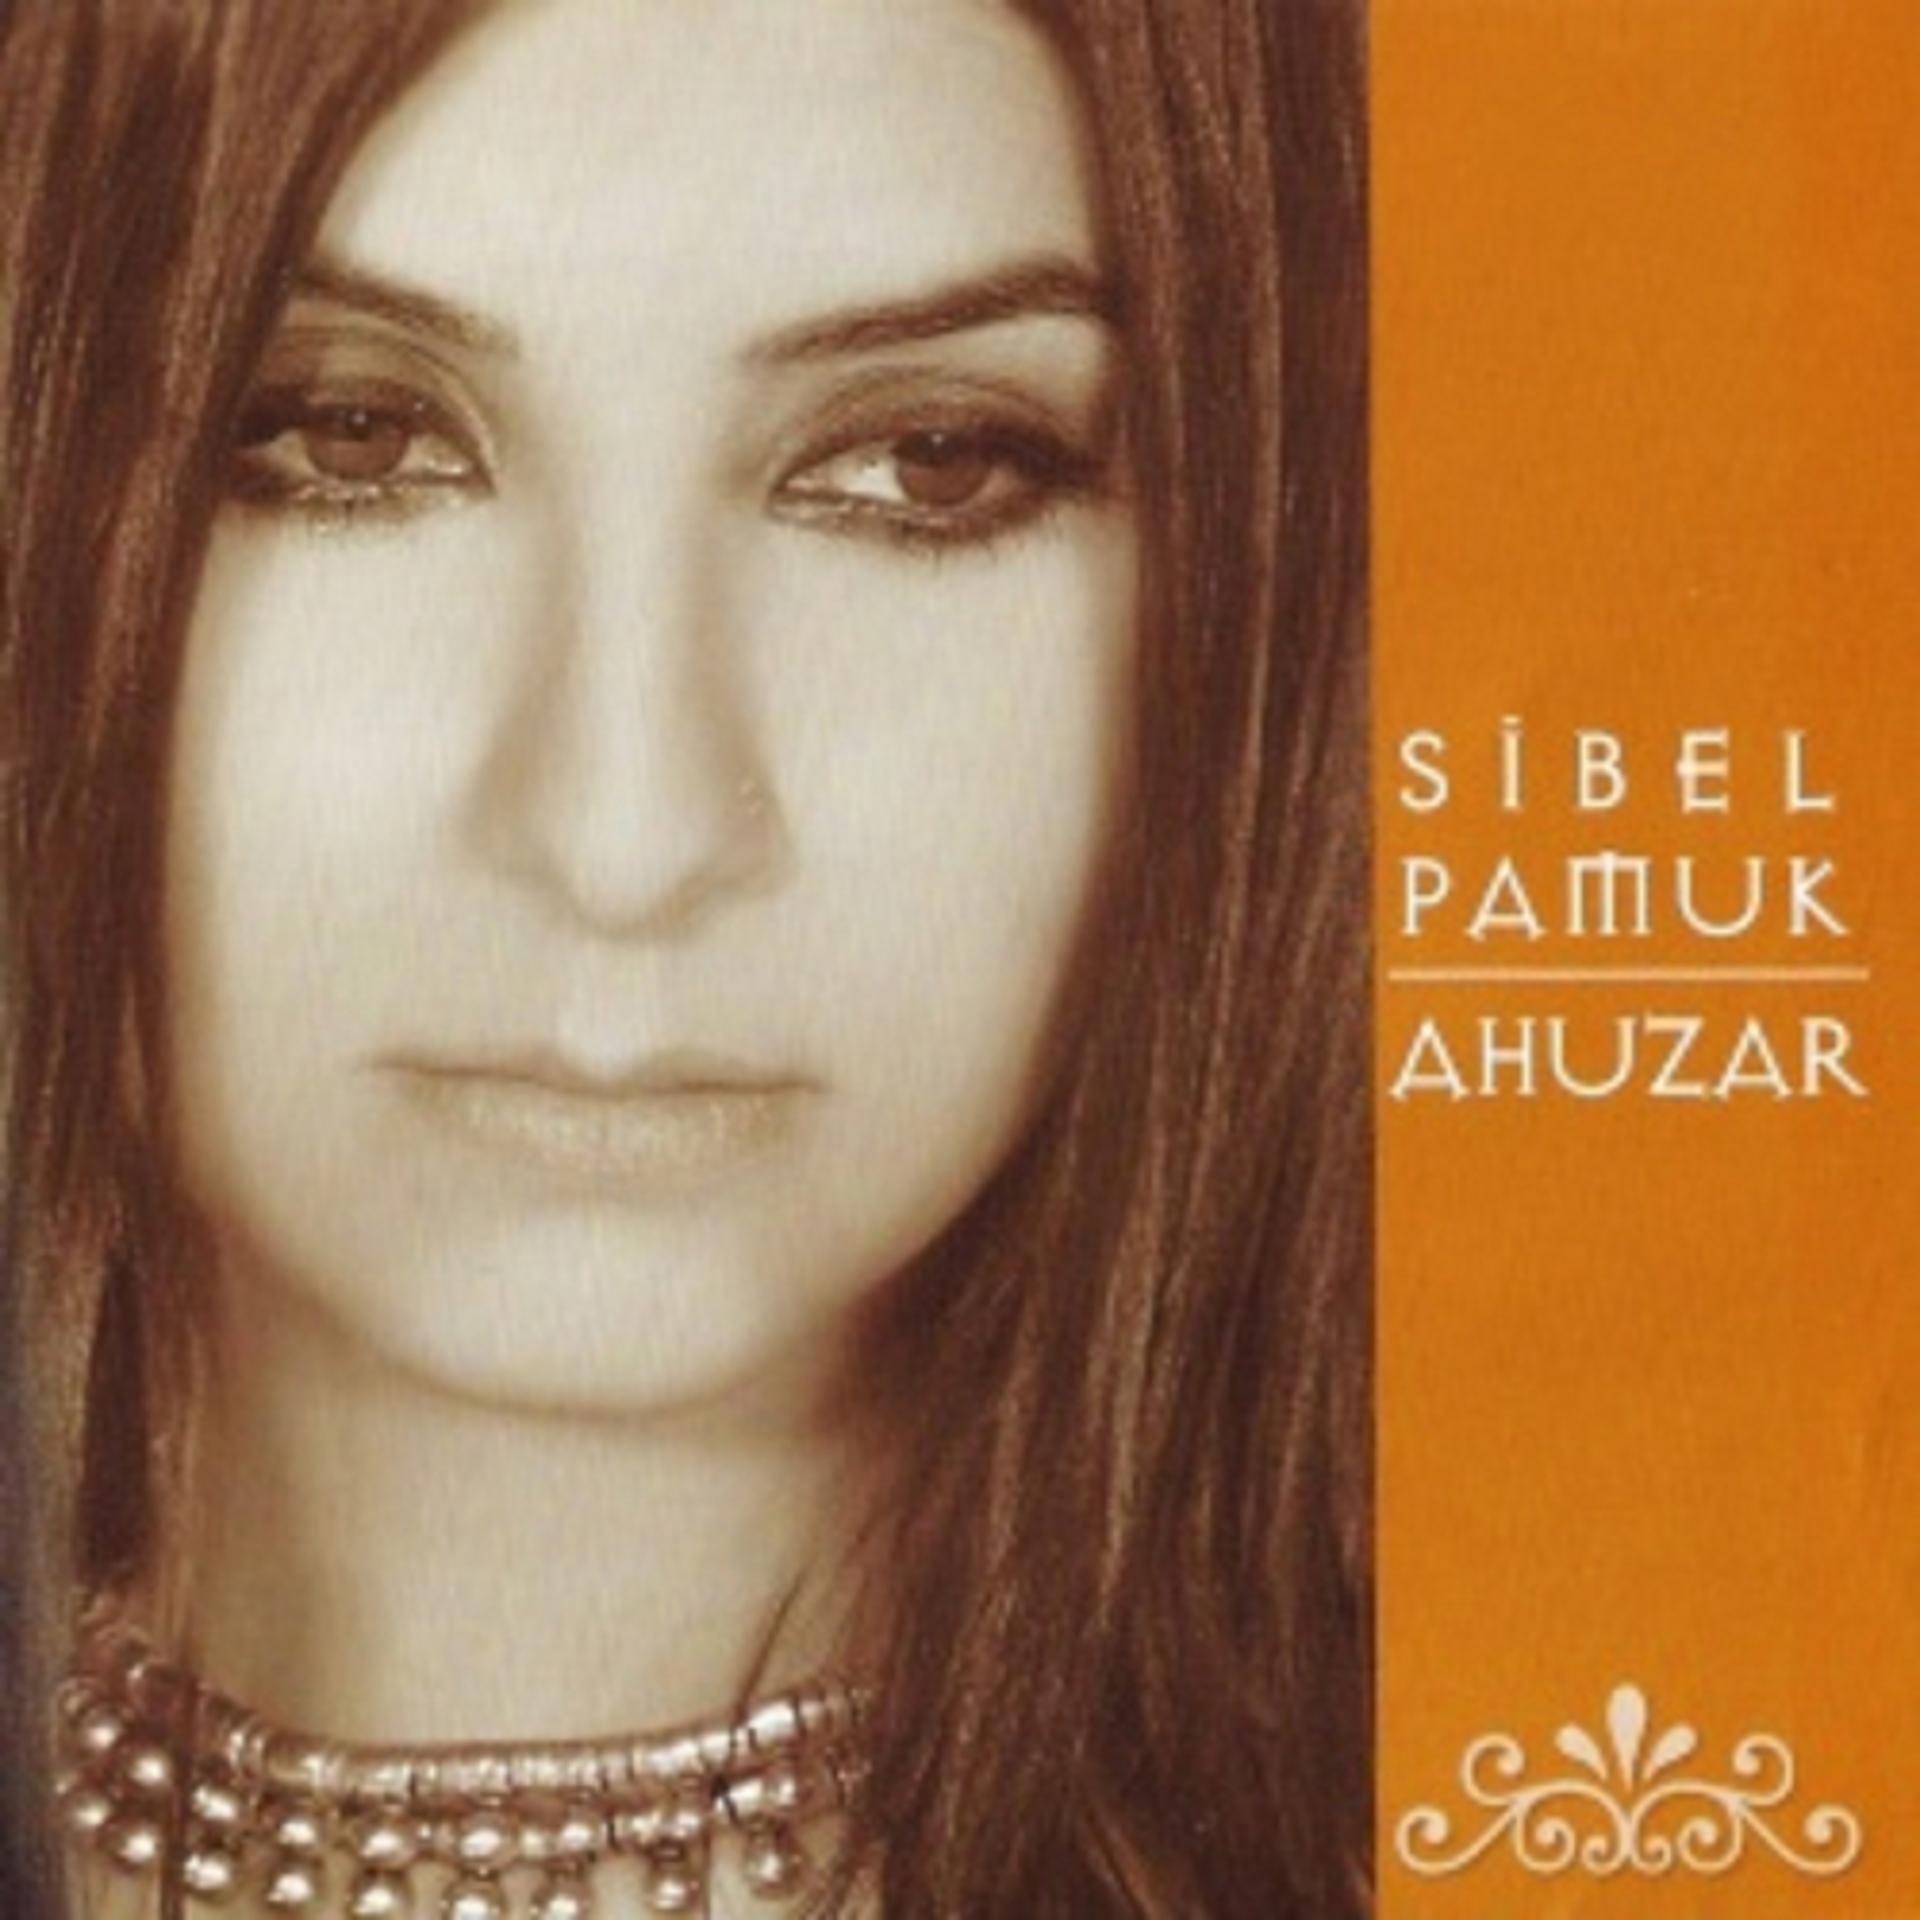 Постер к треку Sibel Pamuk - Sincan Ayaş